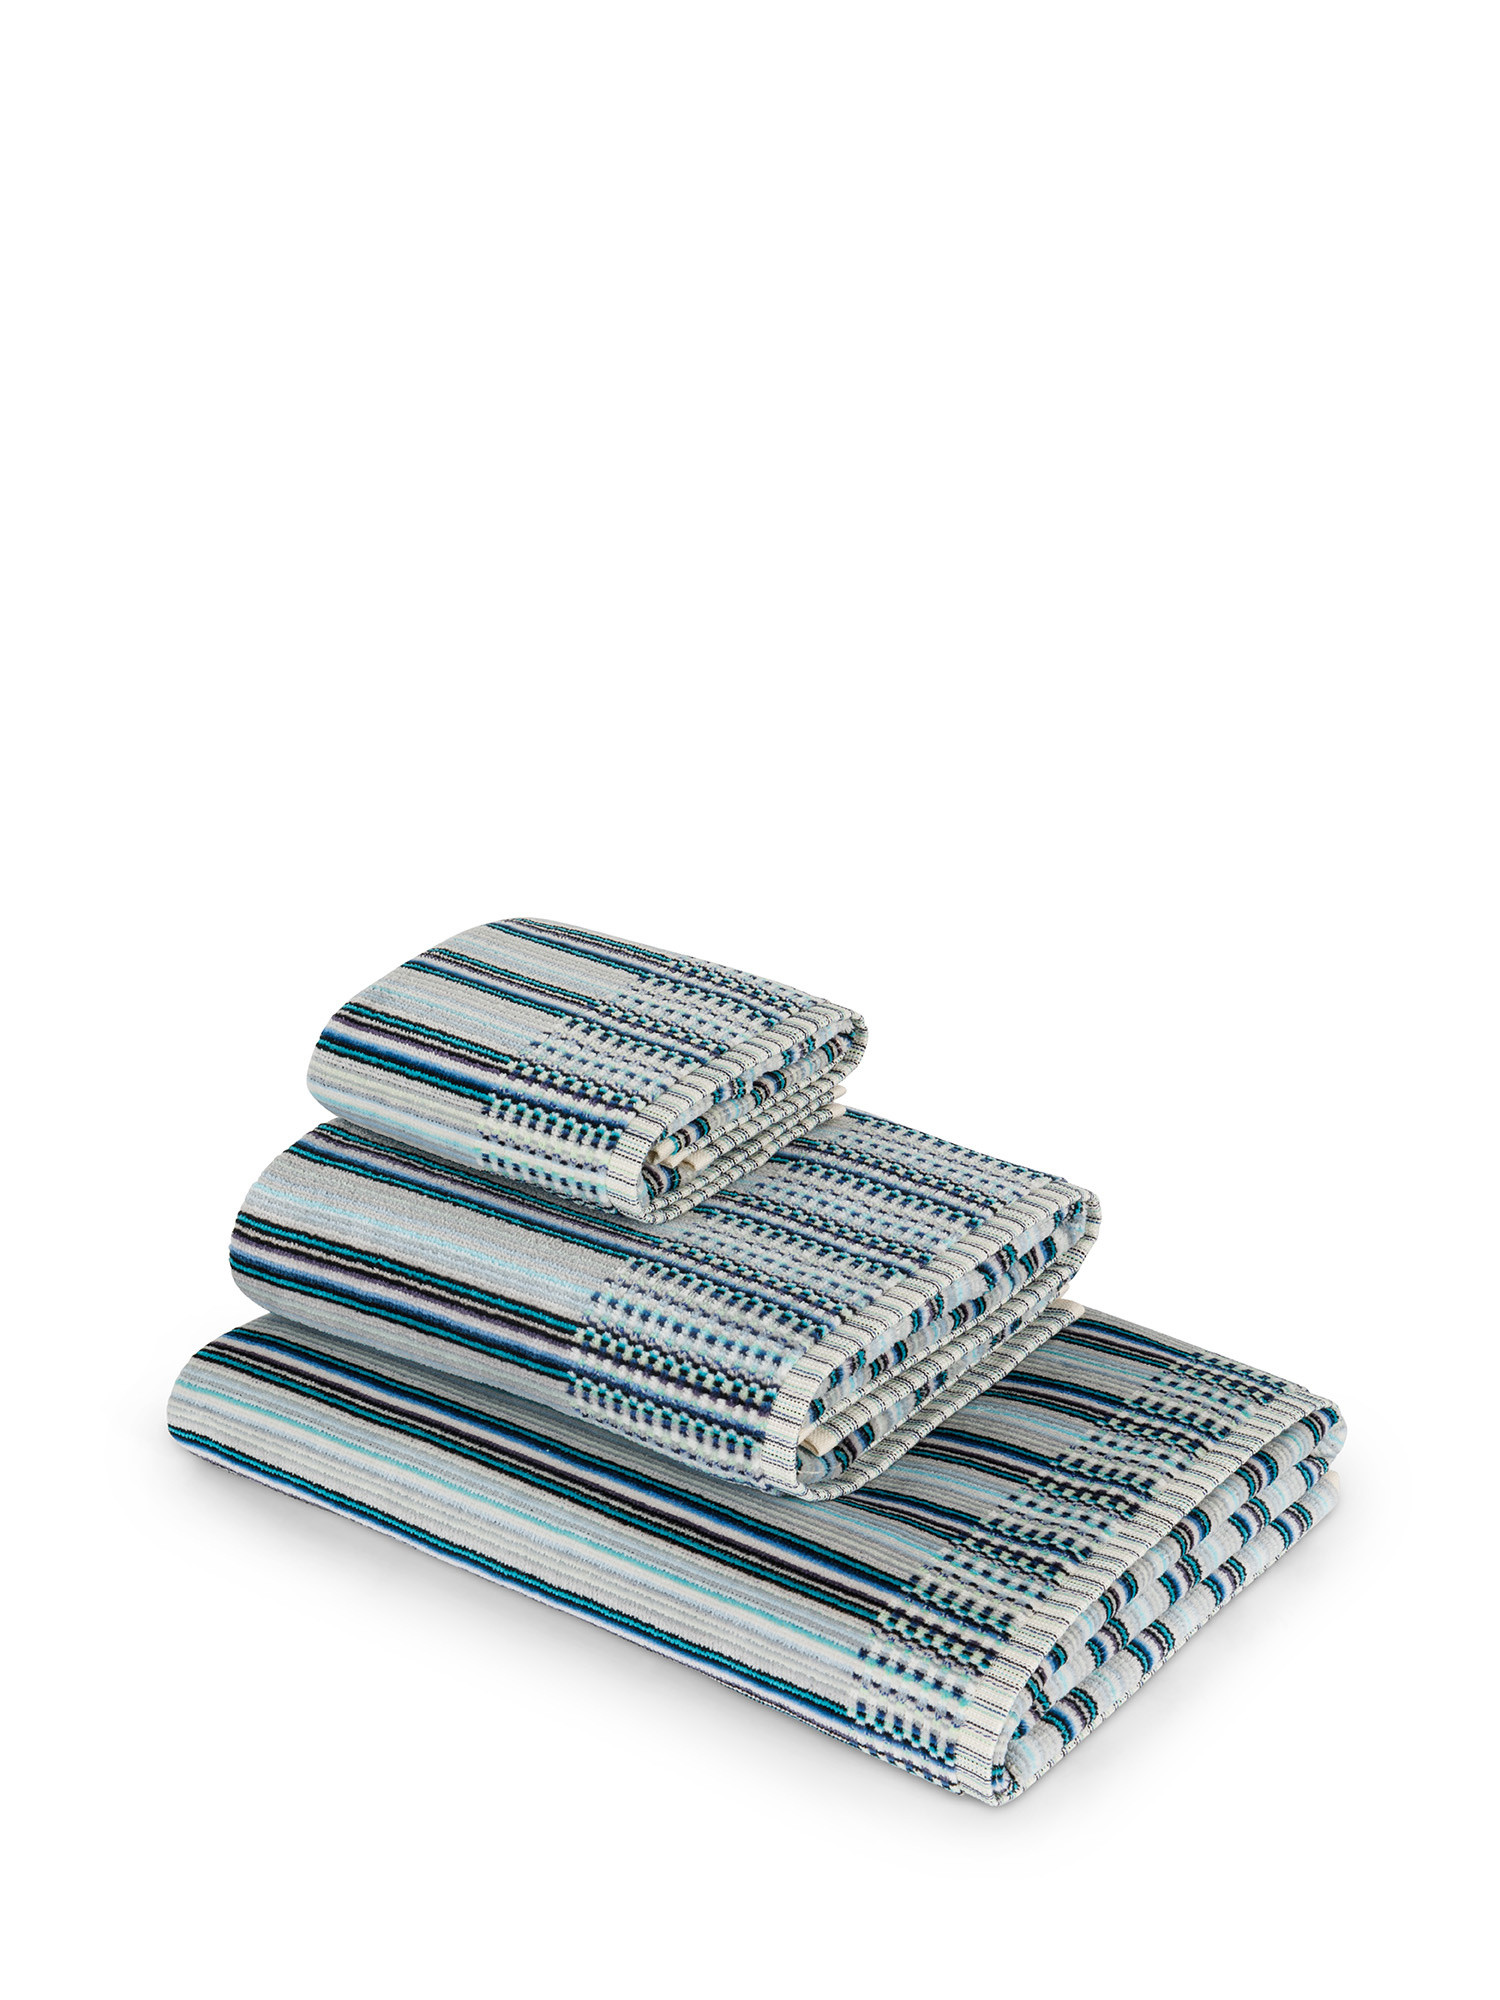 Asciugamano in velour di puro cotone tinto in filo con fantasia a righe, Blu, large image number 0